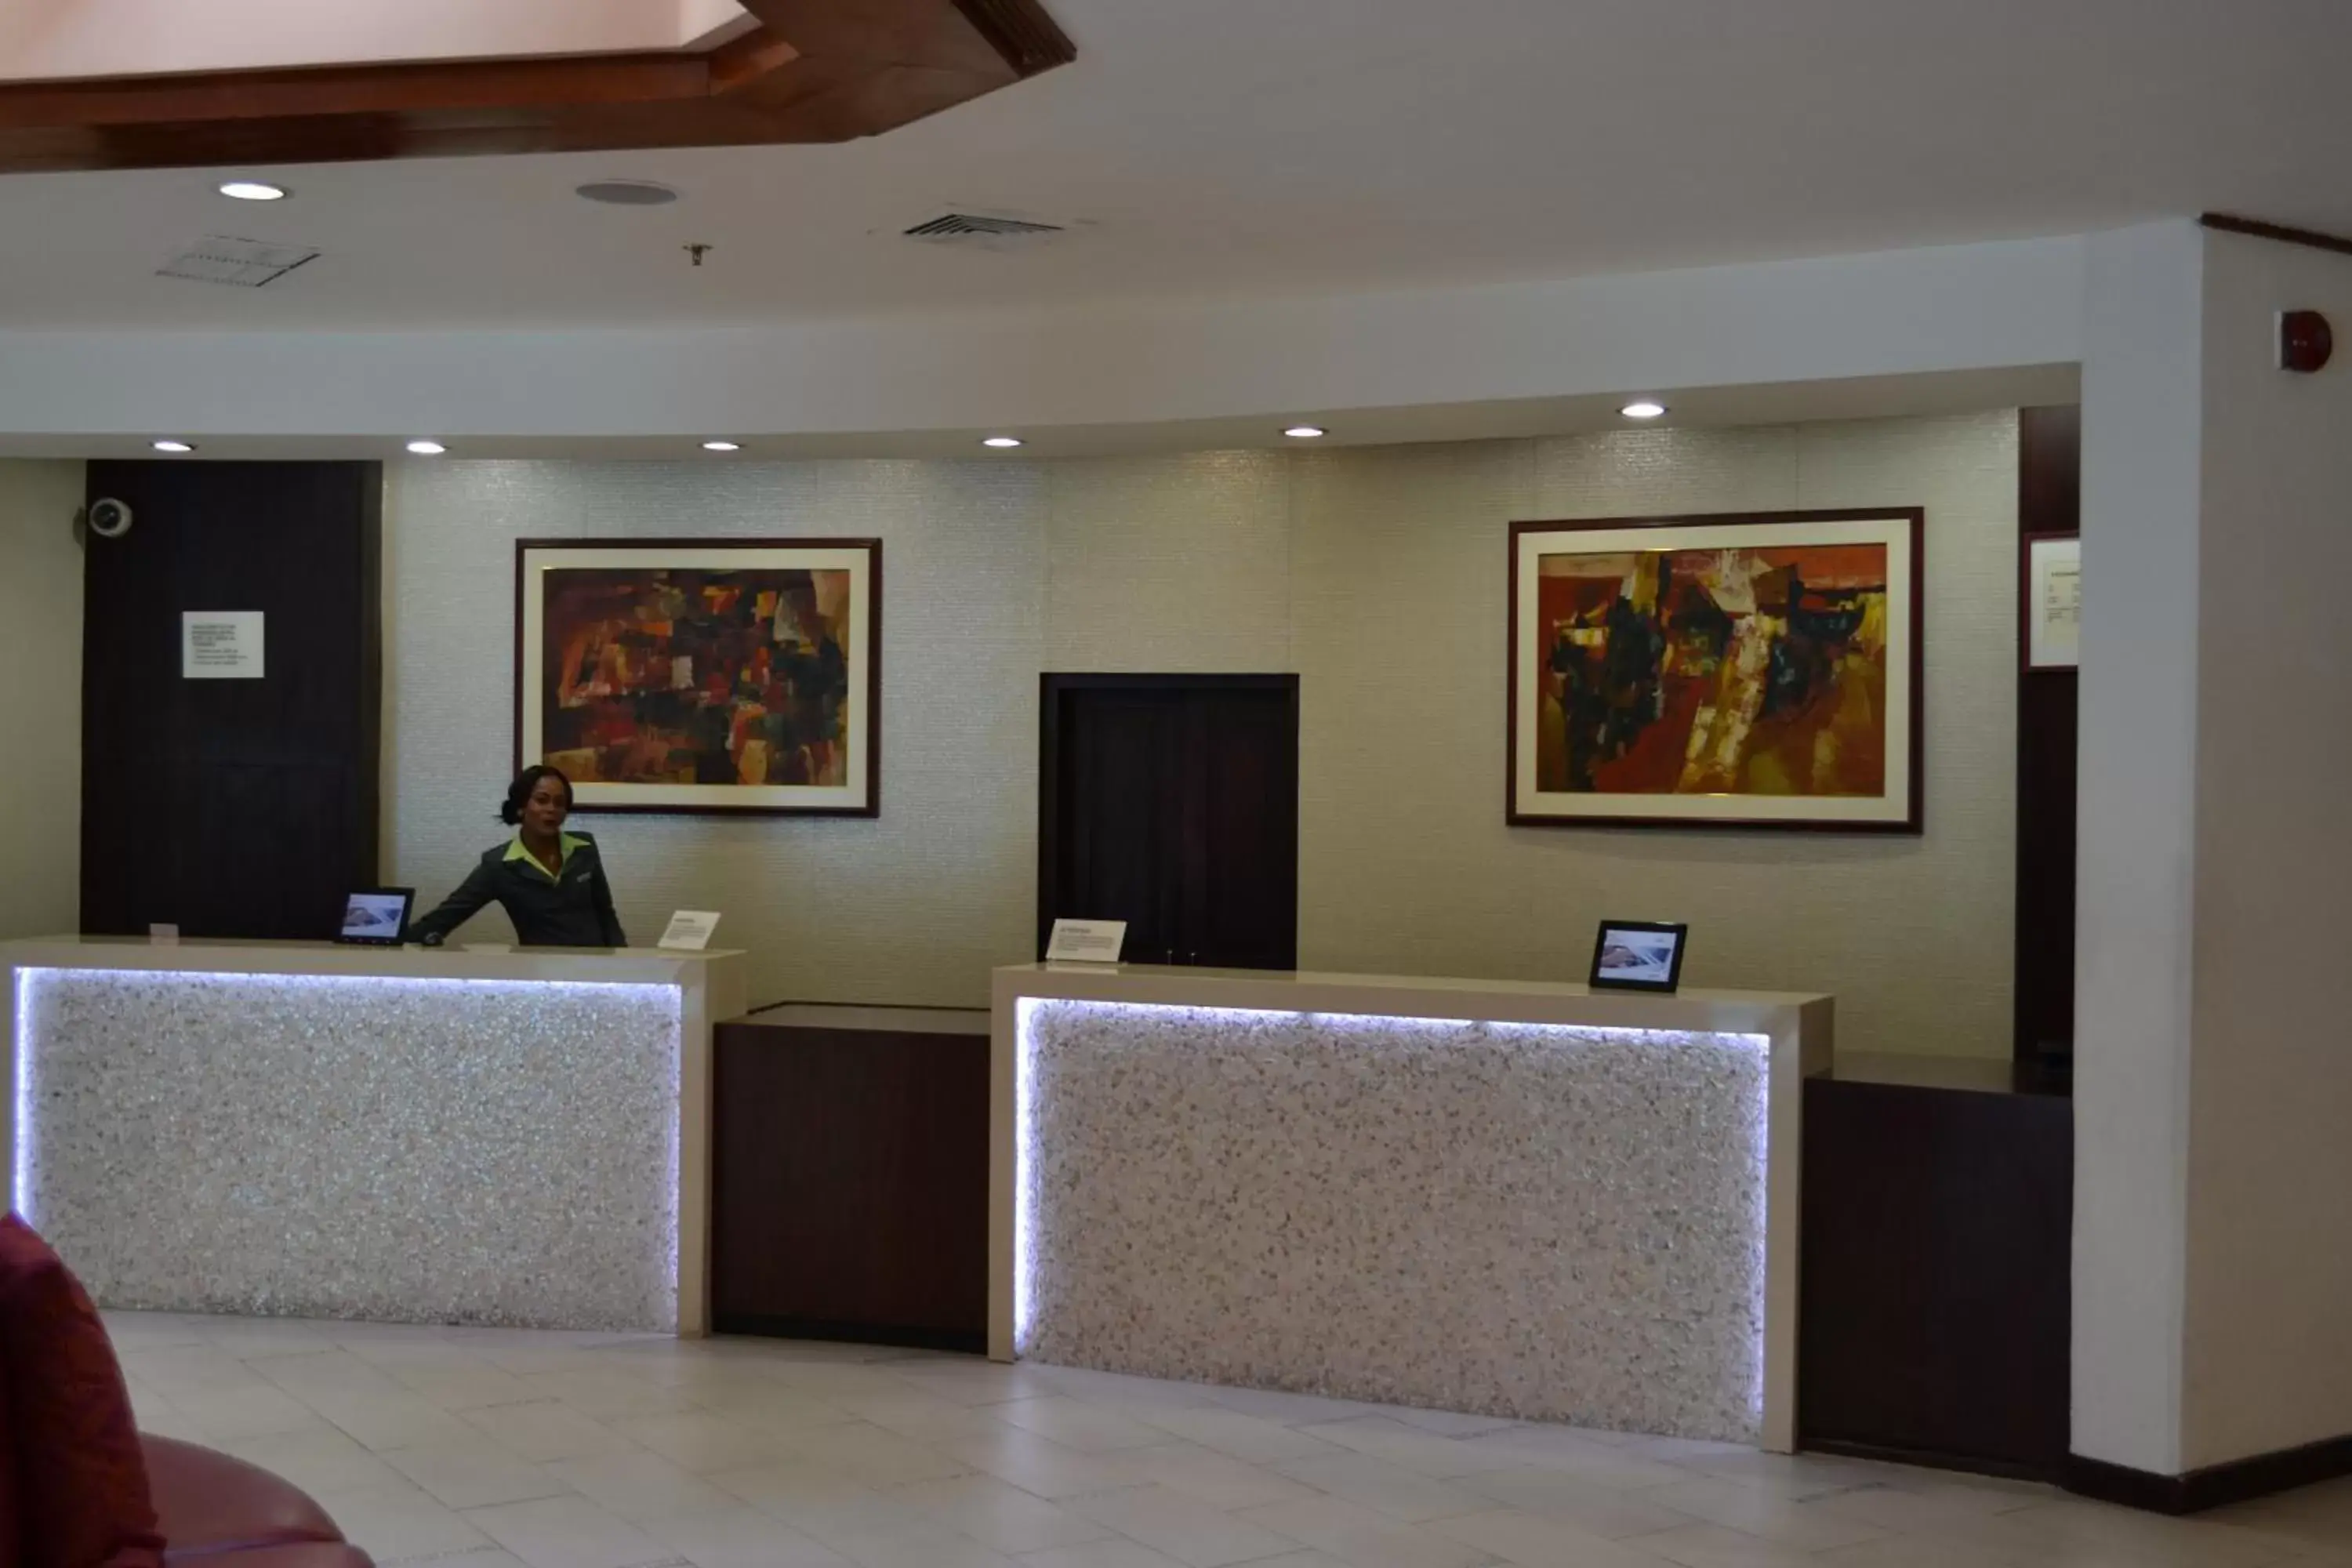 Lobby or reception, Lobby/Reception in Radisson Hotel Trinidad